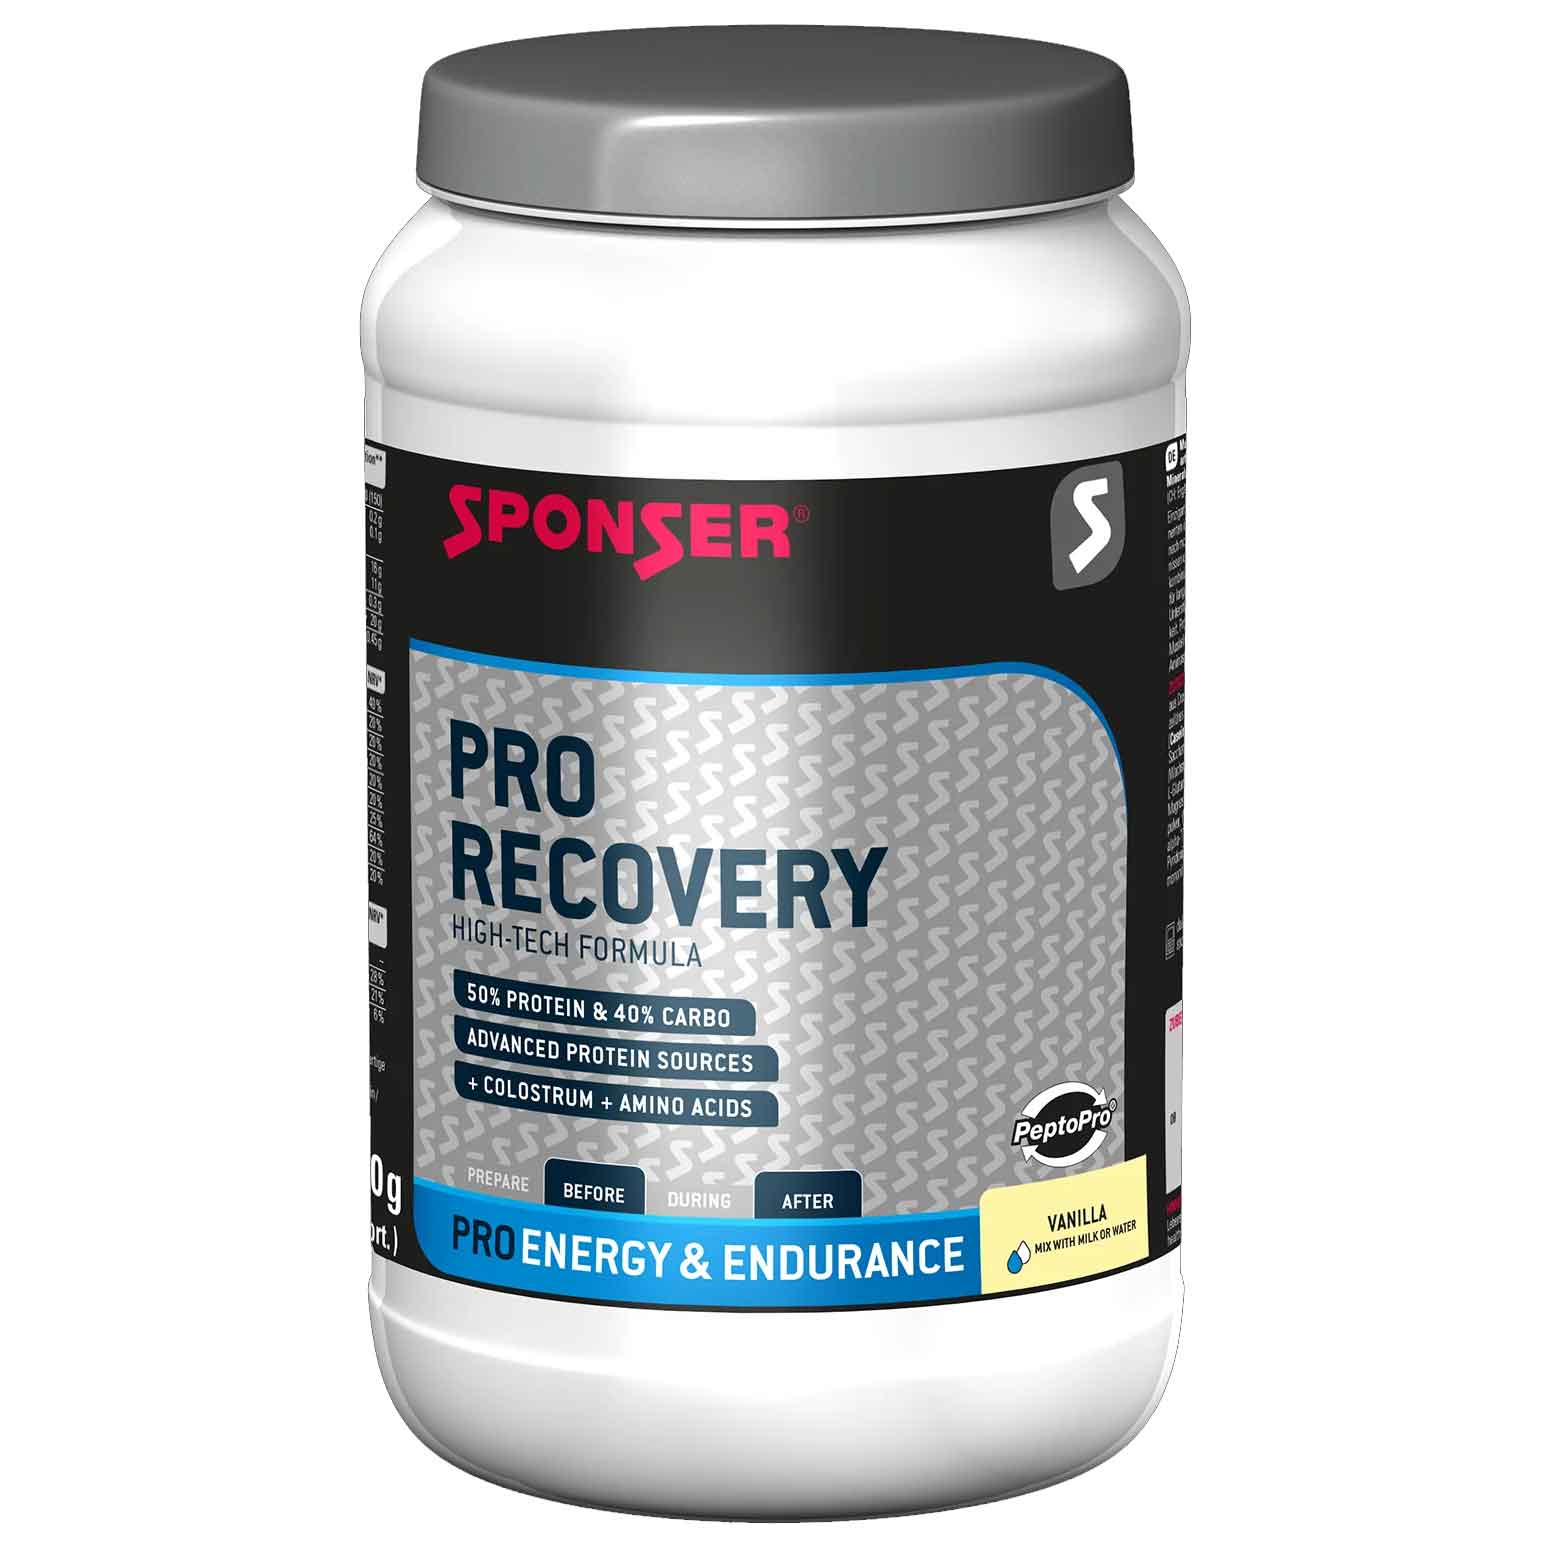 Produktbild von SPONSER PRO Recovery Vanille - Protein-Kohlenhydrat-Getränkepulver - 900g